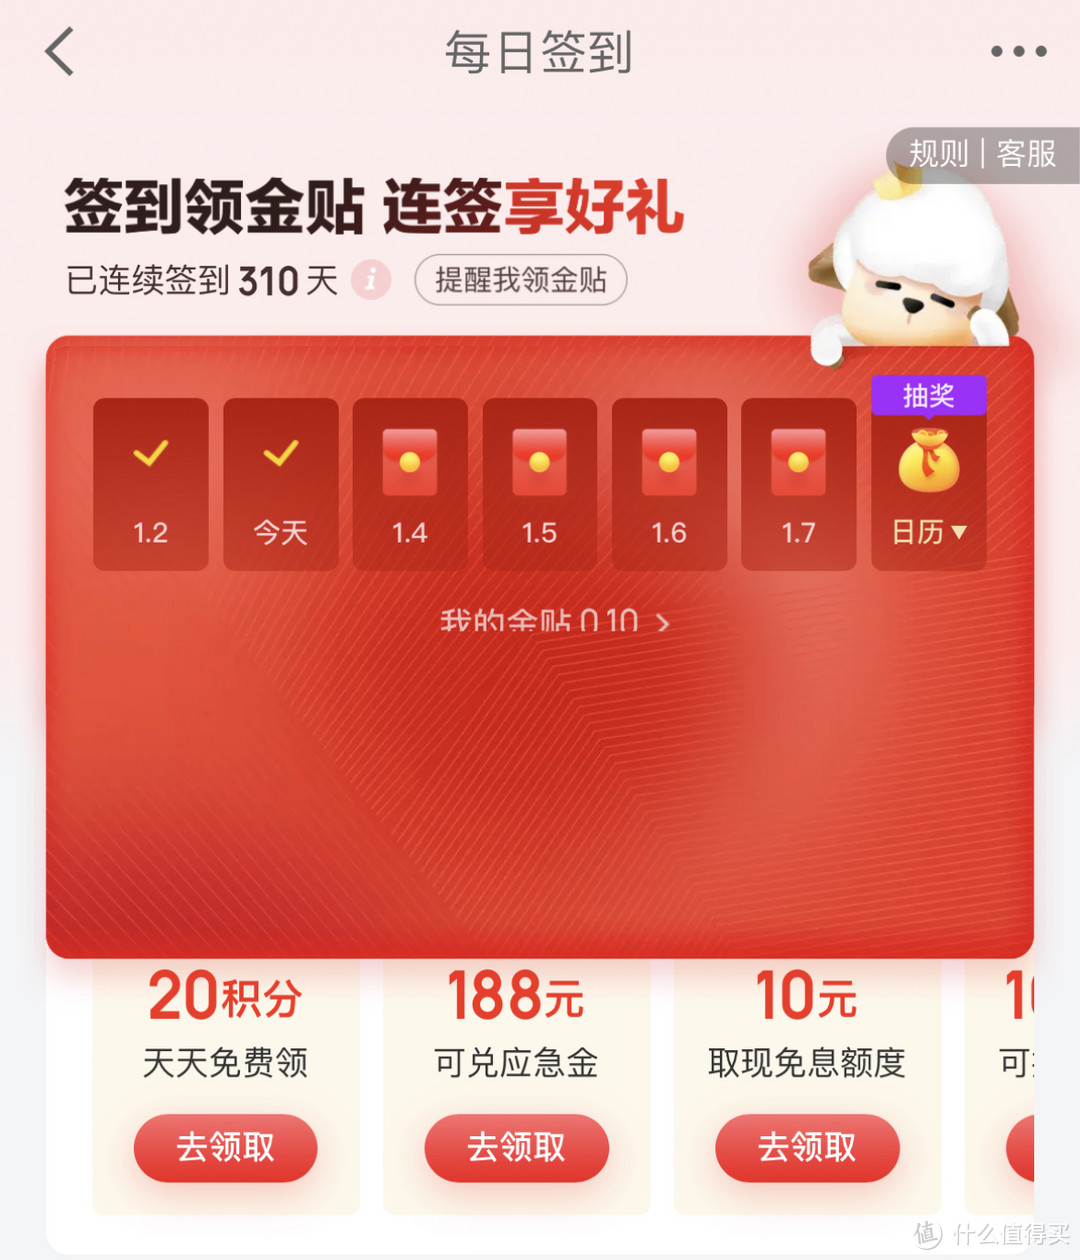 2022年我在京东领了6W京豆和1K红包，京东系四大App 49项最全福利合集【省钱党必收藏】